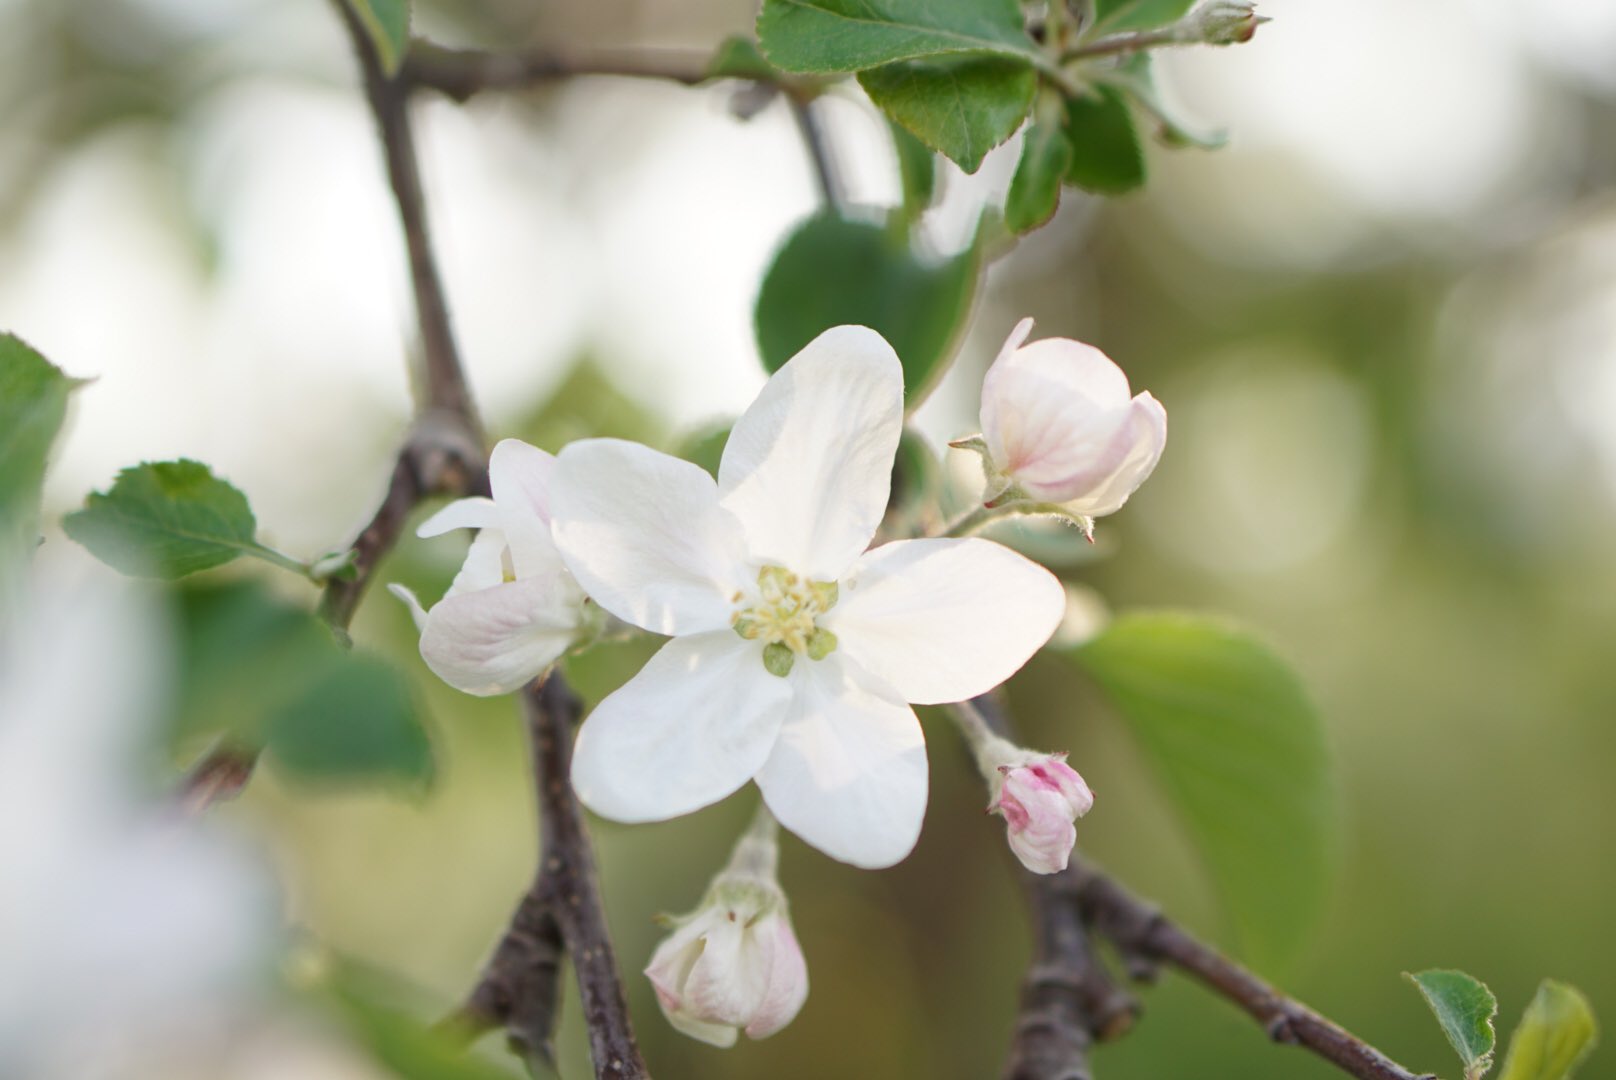 エンゼル ワシントン Routasuohkami さん こんにちは こちらはフルーツが豊富なので 今から次々と果物の 花が咲きます りんご 梨 さくらんぼは白 桃はピンク 桃色 どれもほんのり 甘い香りが漂います さんも穏やかな午後をお過ごしください